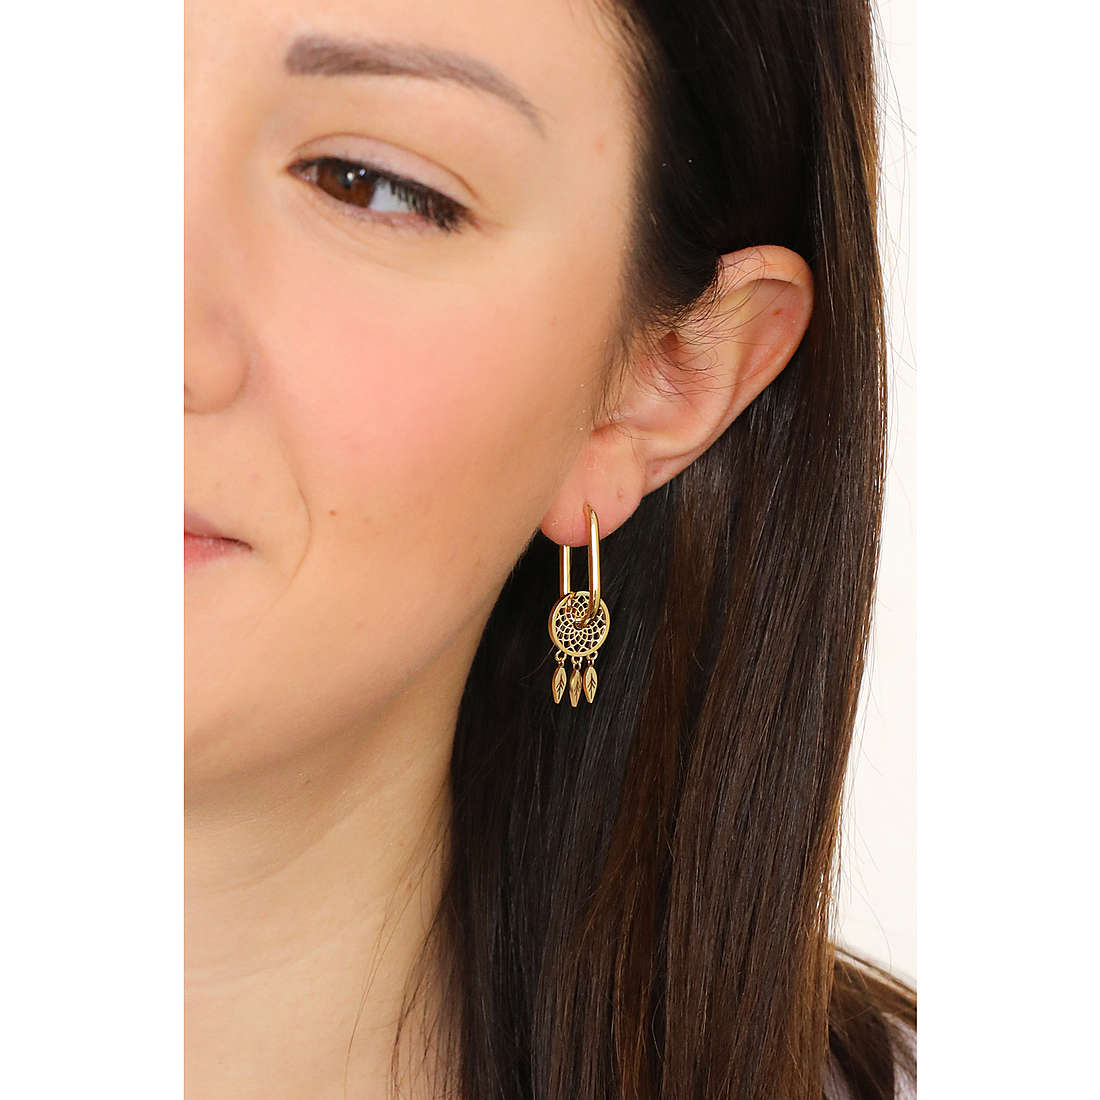 Brosway earrings Chakra woman BHKE120 wearing